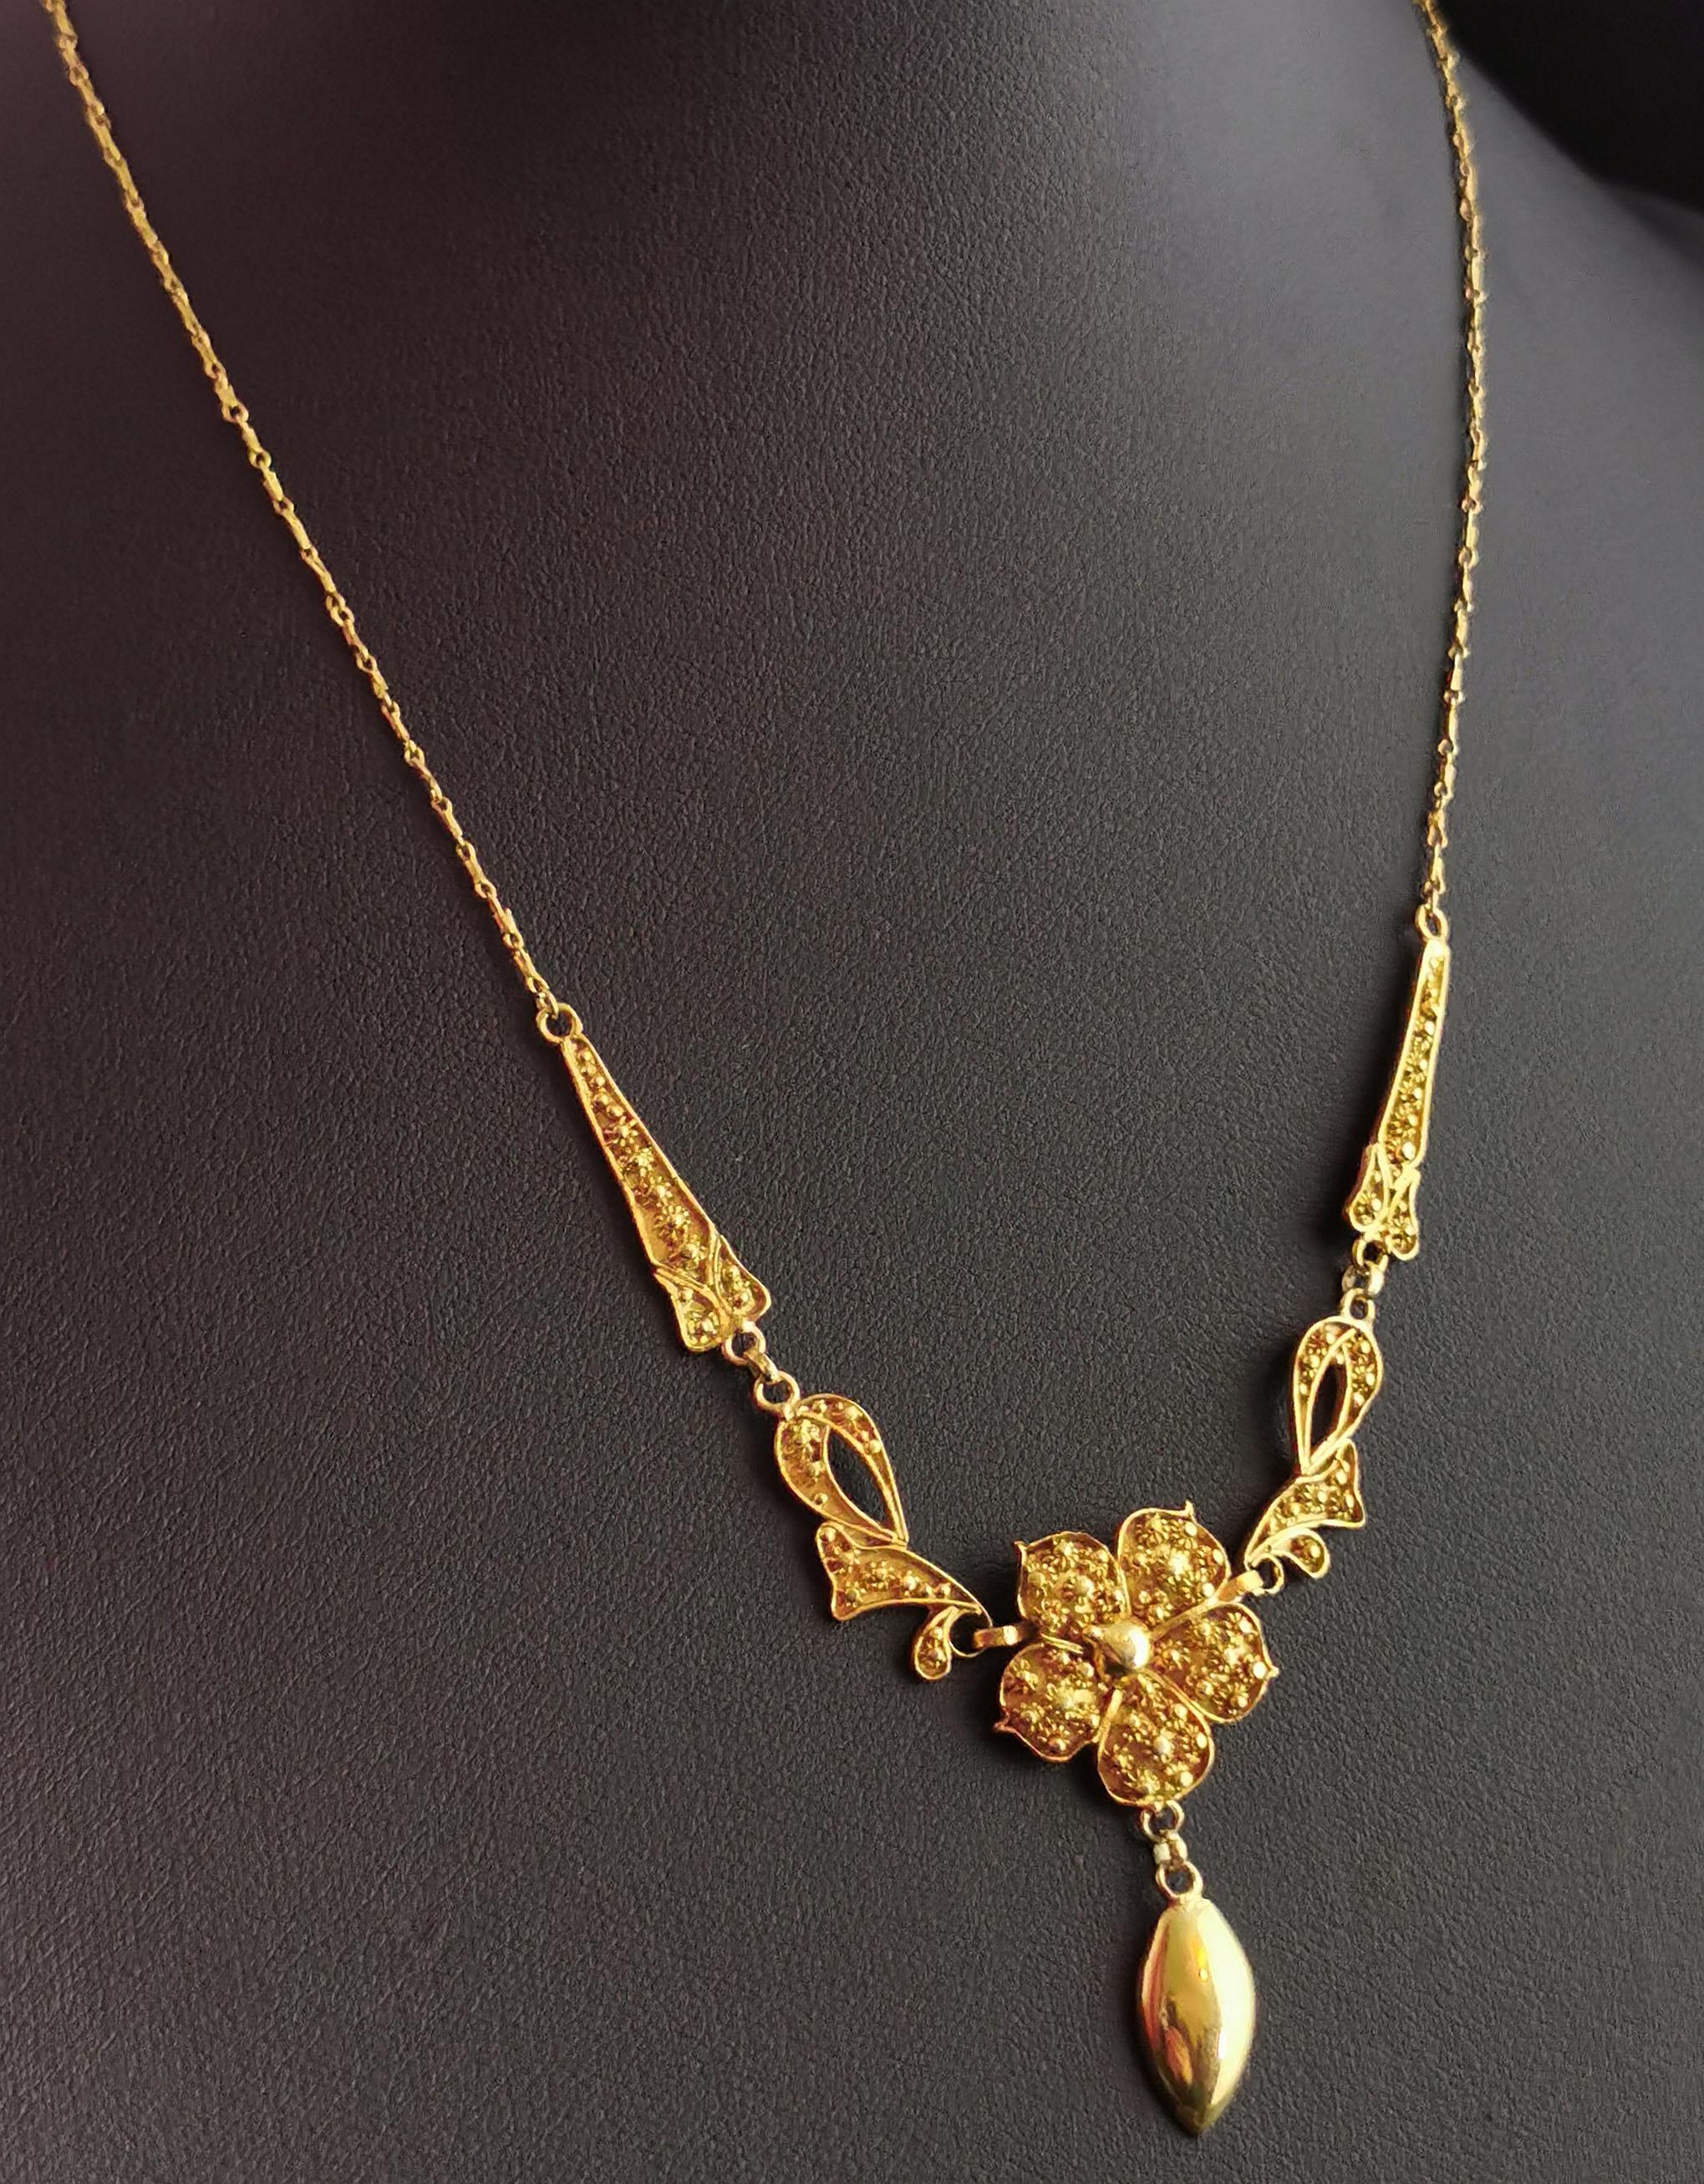 Antique Art Nouveau Lavalier Necklace, Floral, 22 Karat Yellow Gold 7